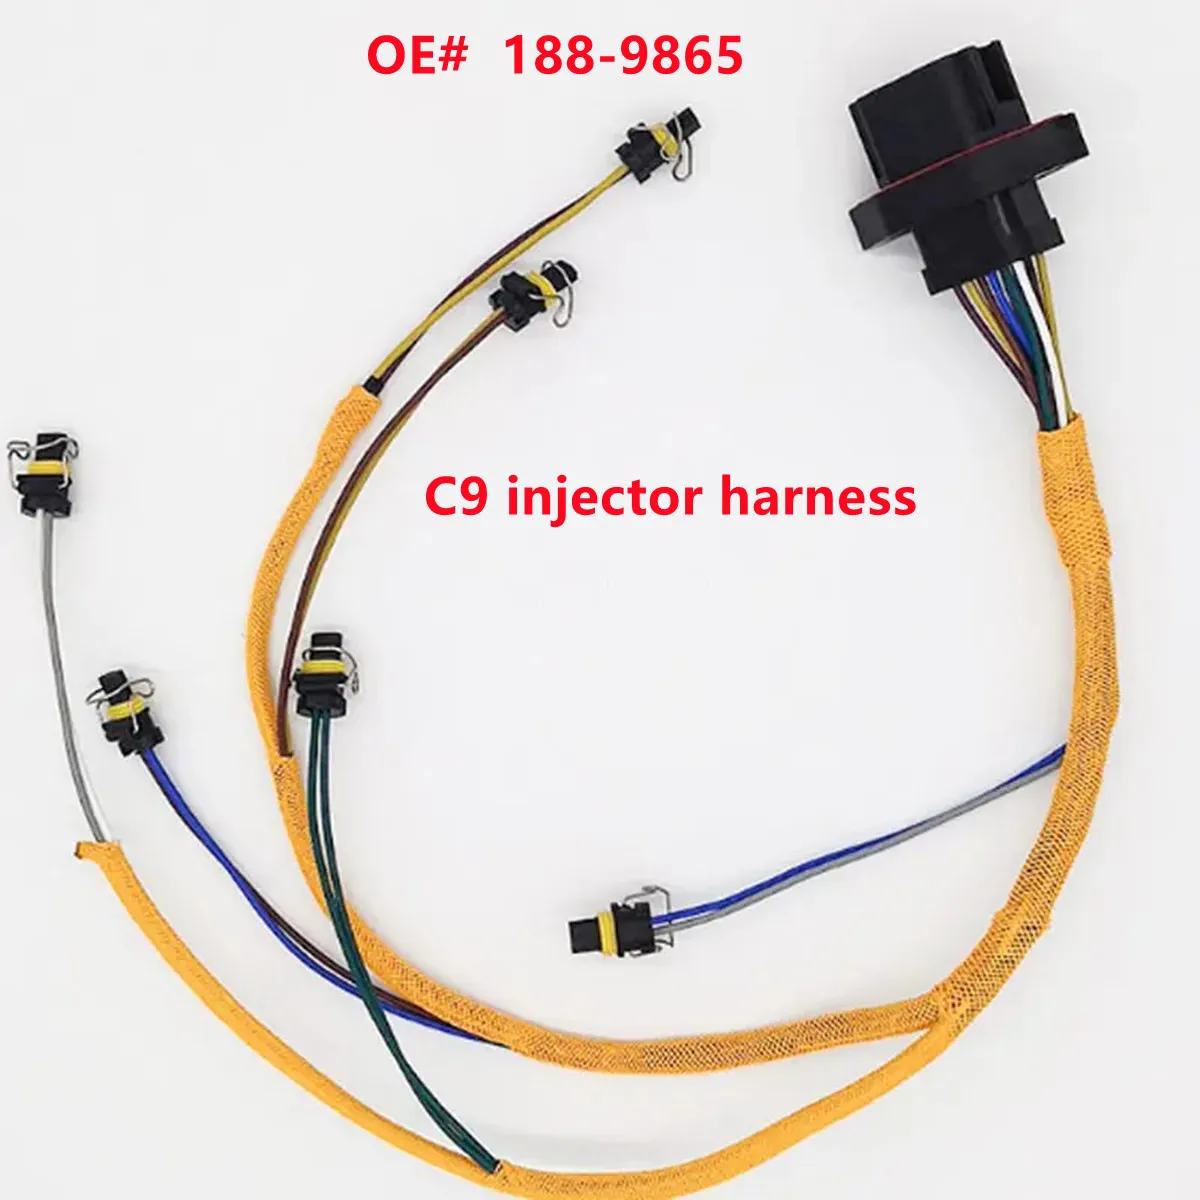 

C-9 188-9865 1889865 жгут проводов инжектора для экскаватора Caterpillar CAT 330C 330D 336D